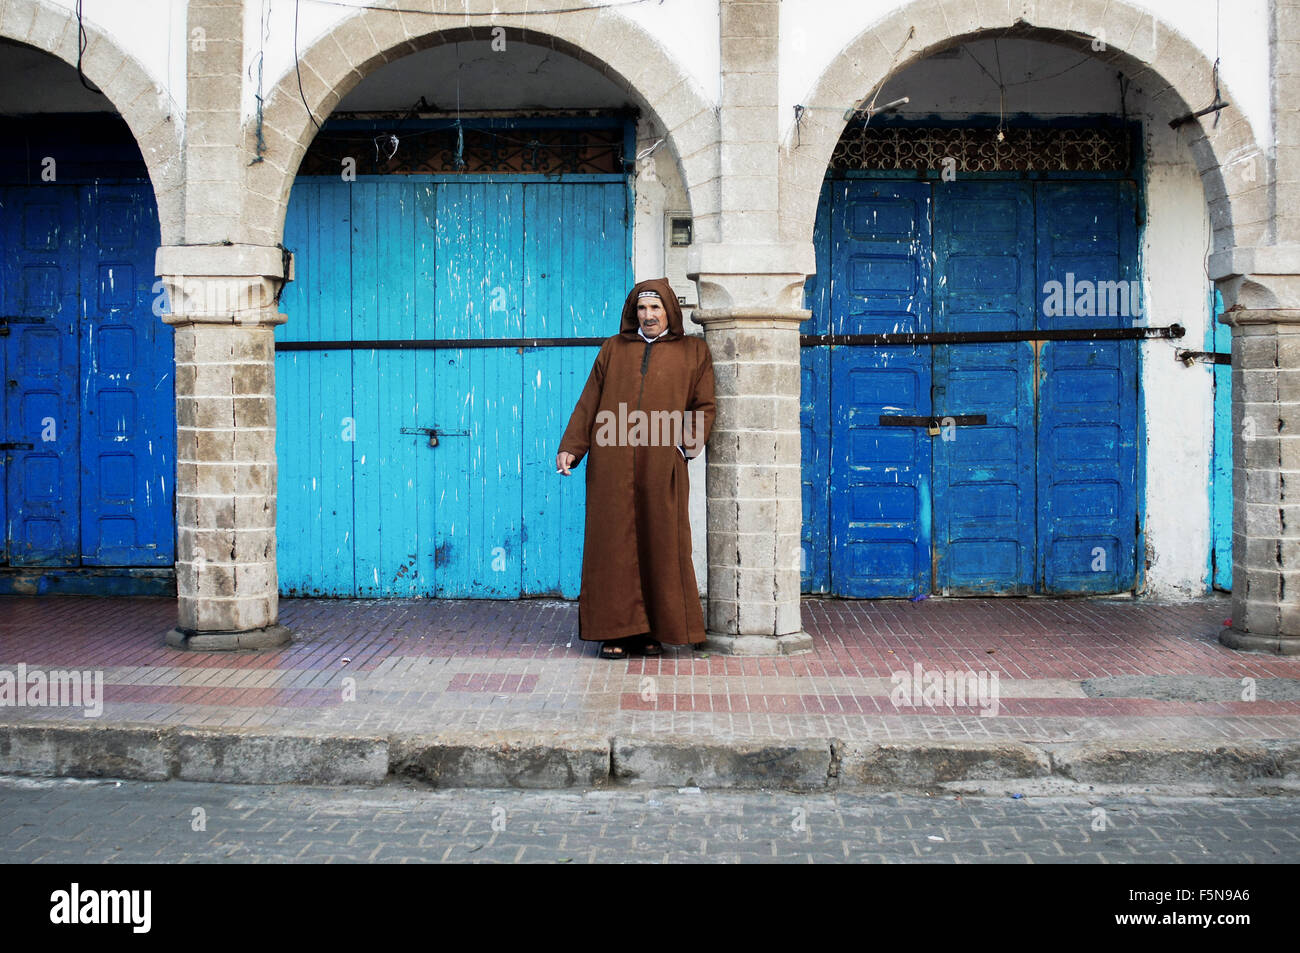 Un homme habillé en djellaba s'appuie contre une colonne en face de boutiques fermées à Essaouira, Maroc Banque D'Images